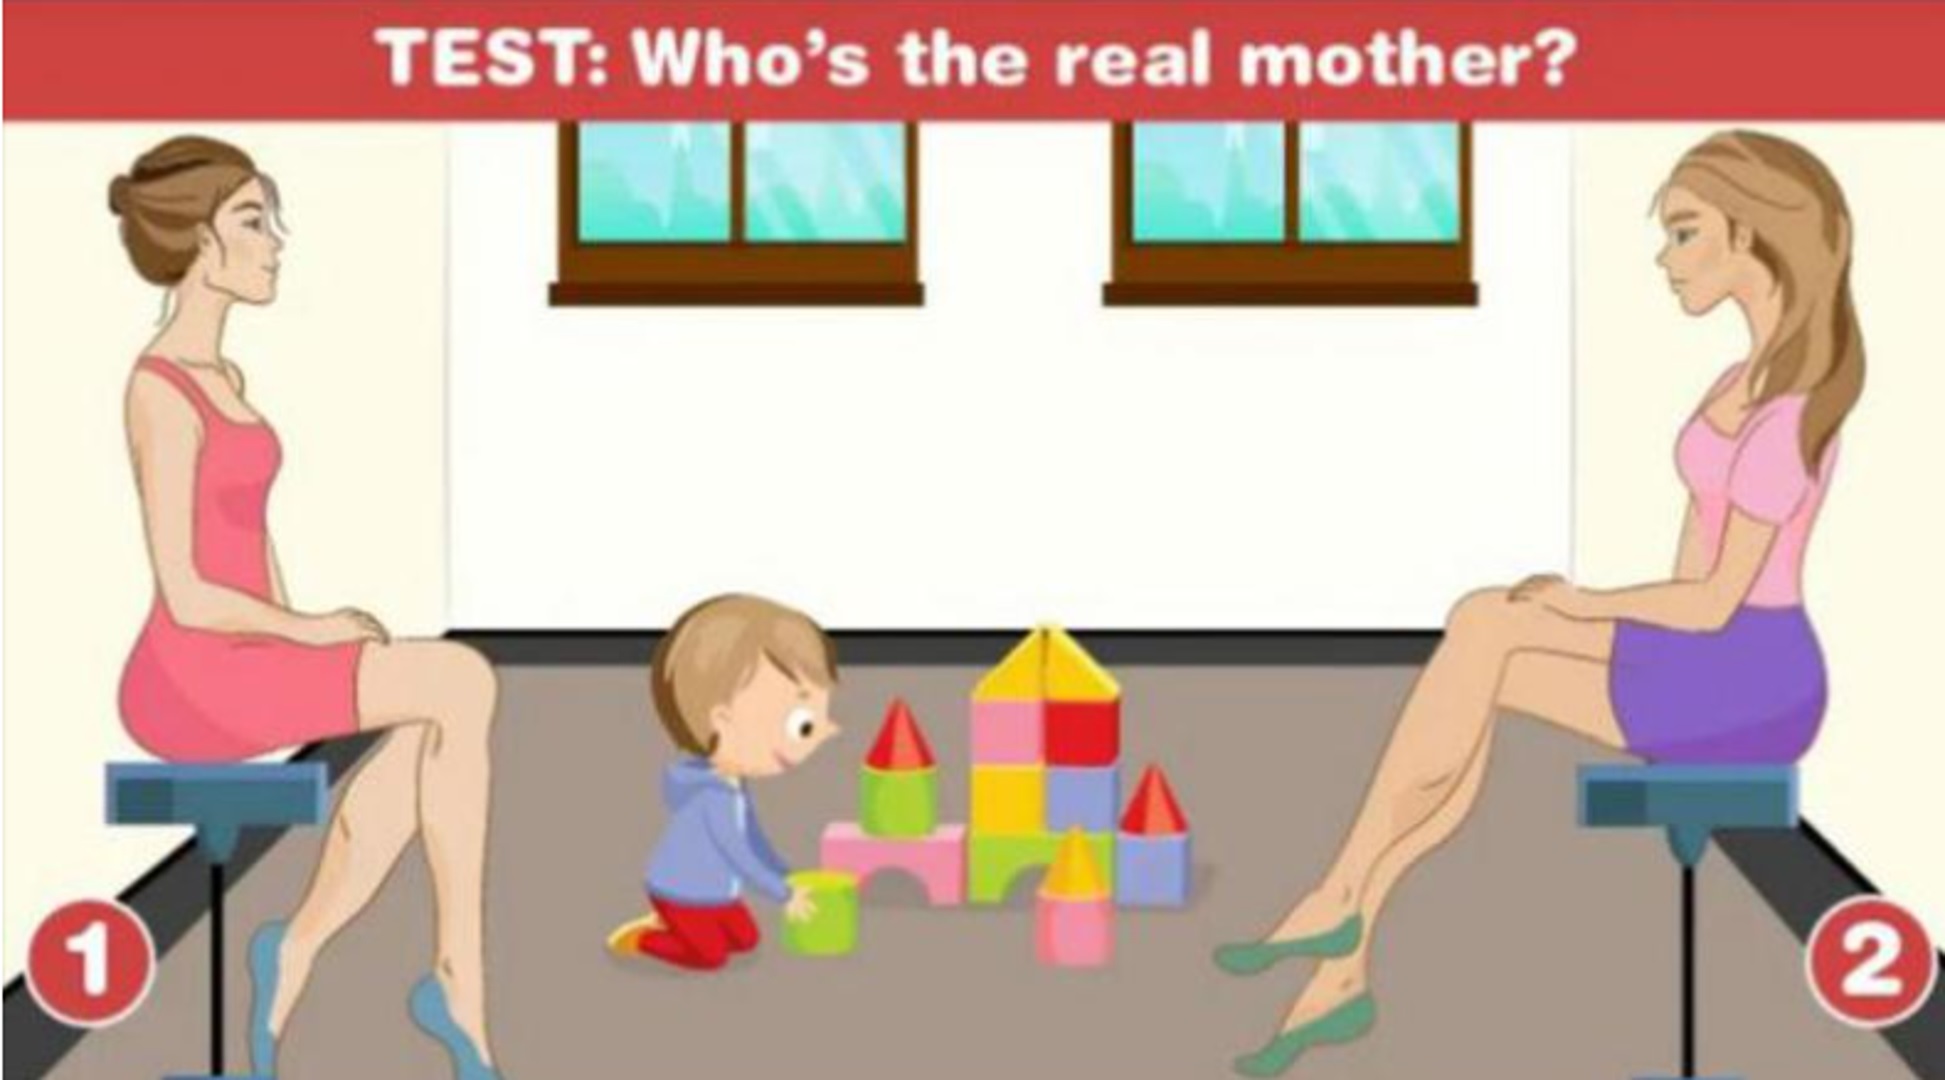 Možete li pogoditi ko je majka djeteta na ilustraciji?